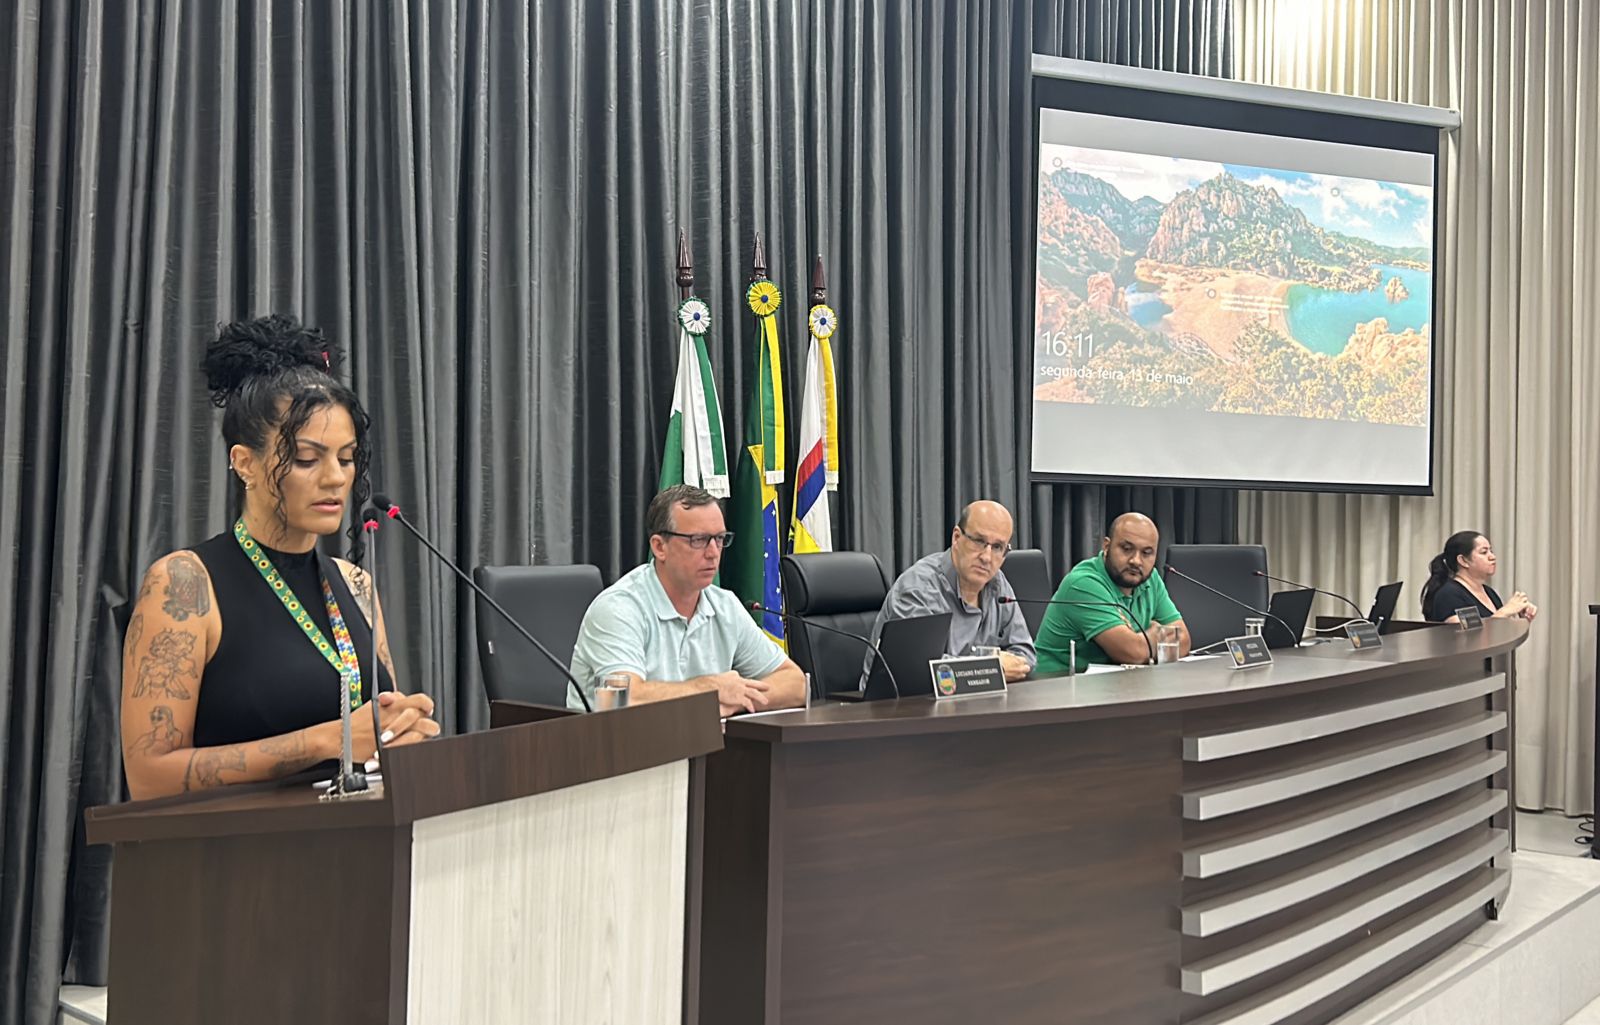 Assistência social é tema abordado durante sessão da Câmara de Apucarana 